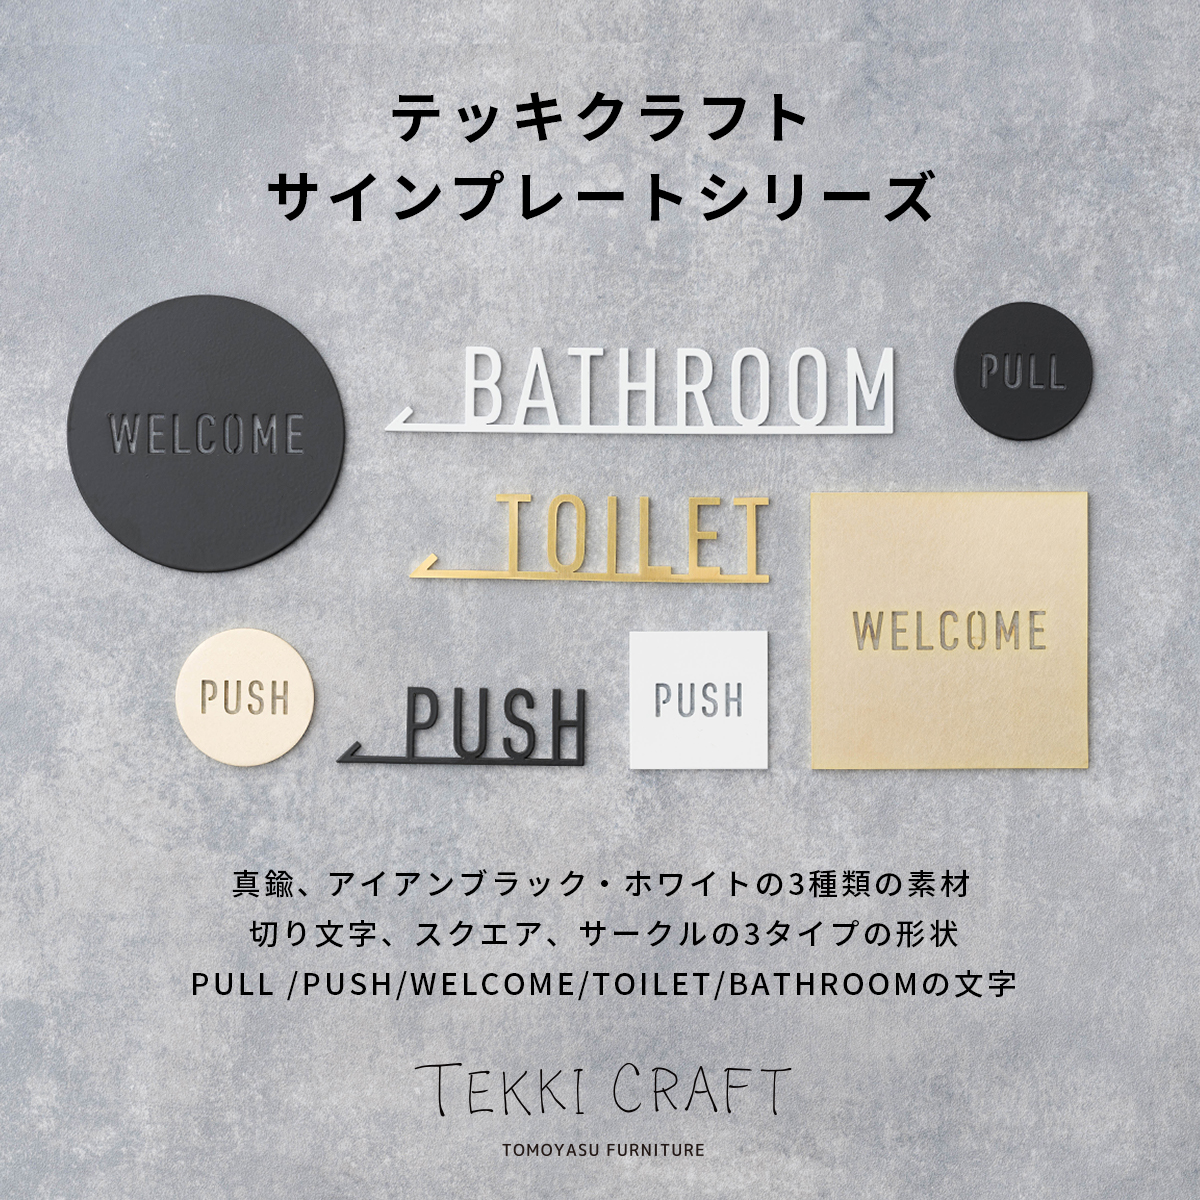 真鍮サイン・ネーム・ドアプレート TOILET TEKKI CRAFT・テッキクラフト